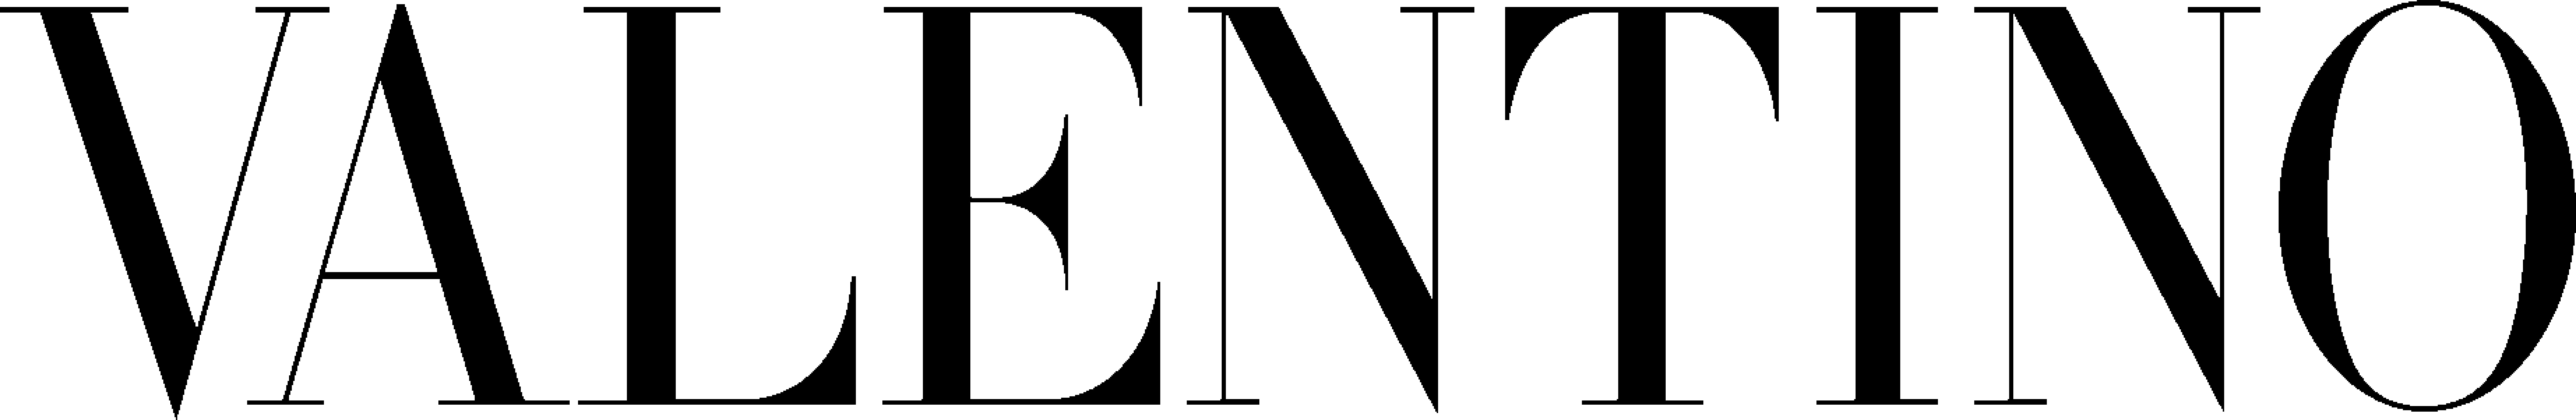 ヴァレンティノ Logo